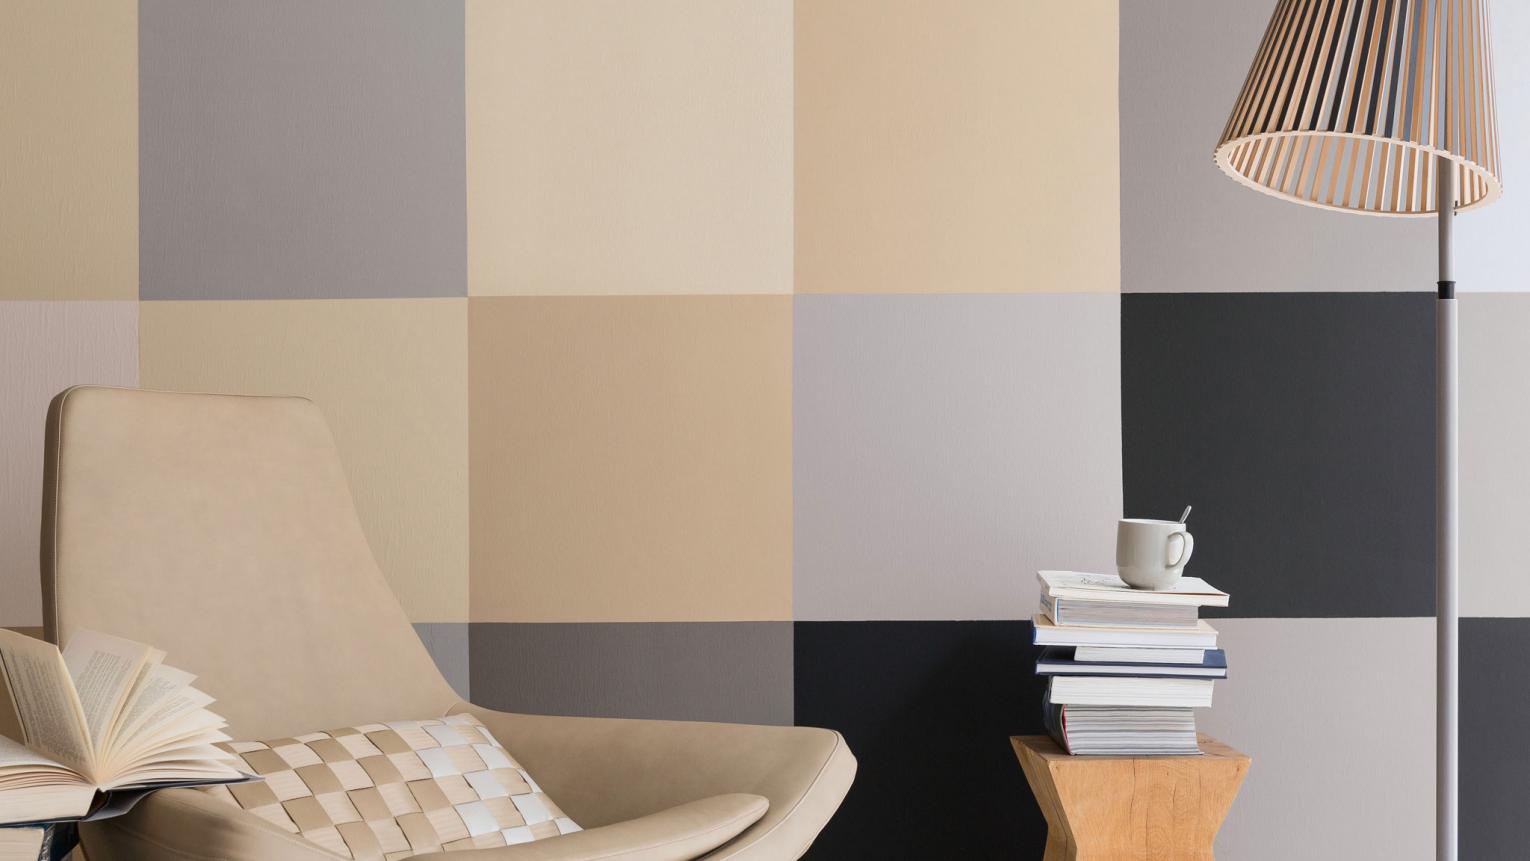 Neutrale Farbpalette für das Wohnzimmer wählen und geometrische Muster an die Wand streichen